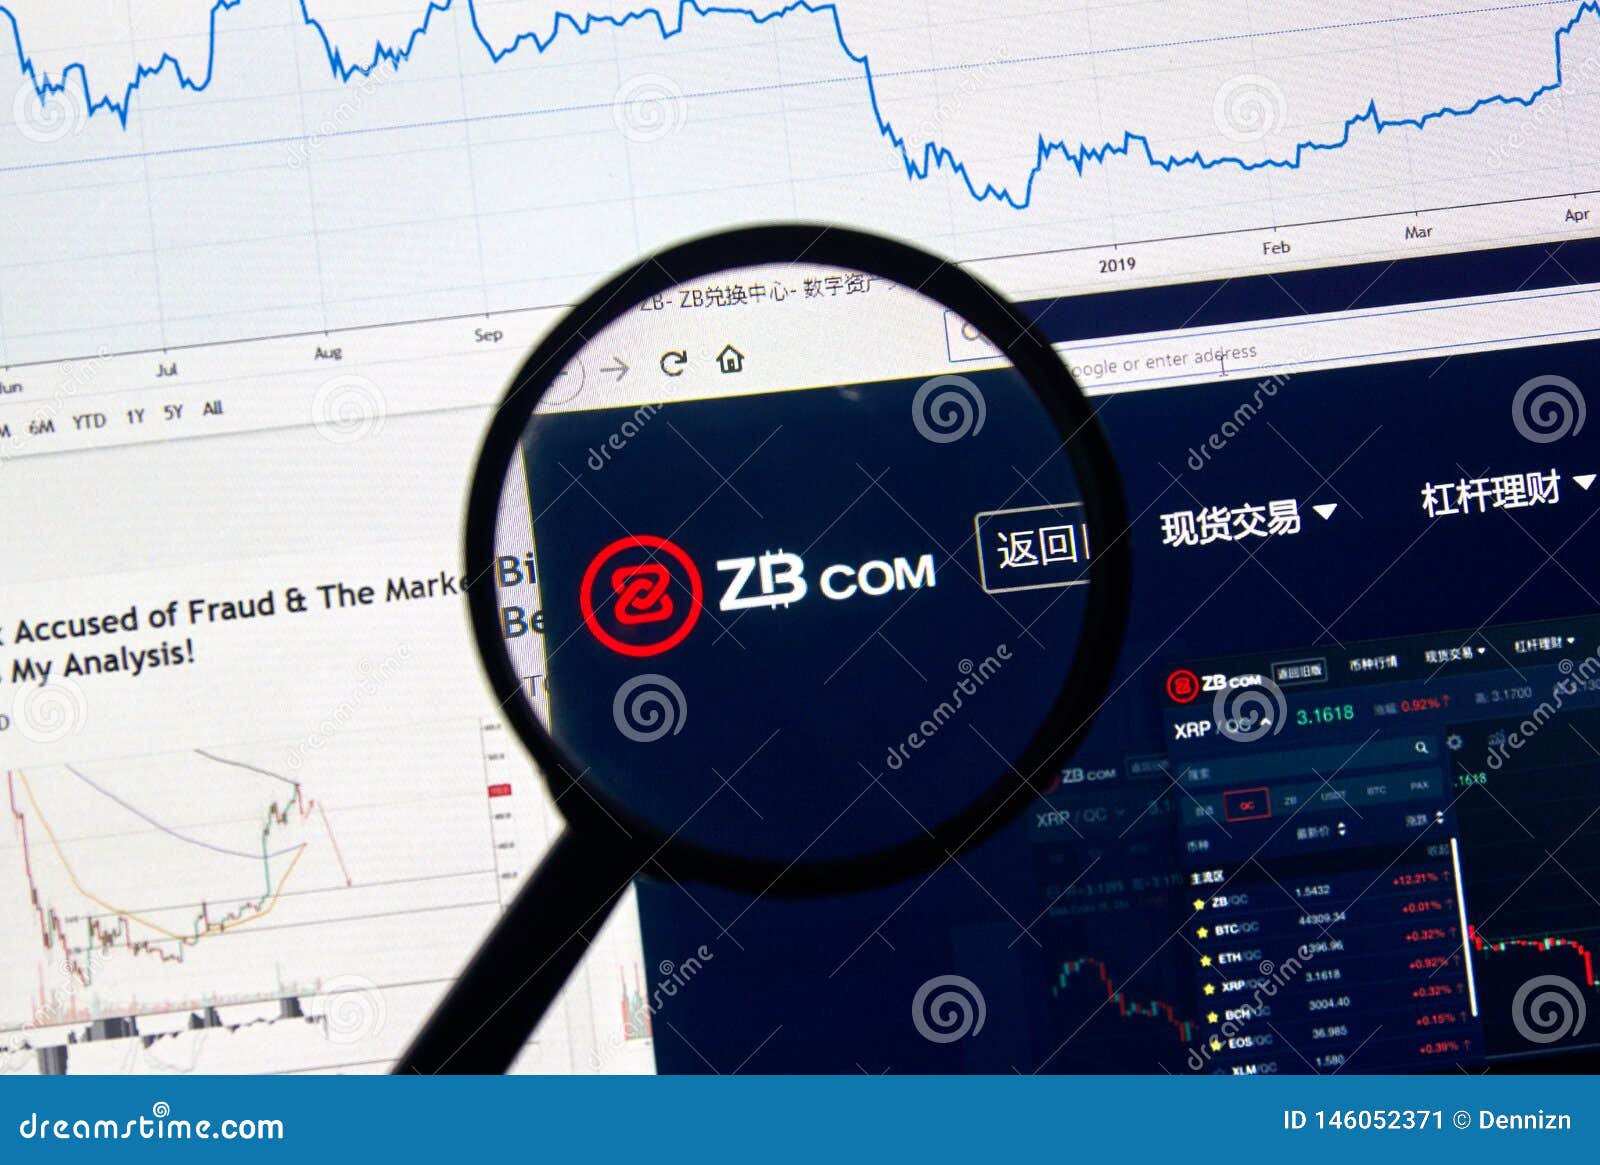 zb crypto exchange